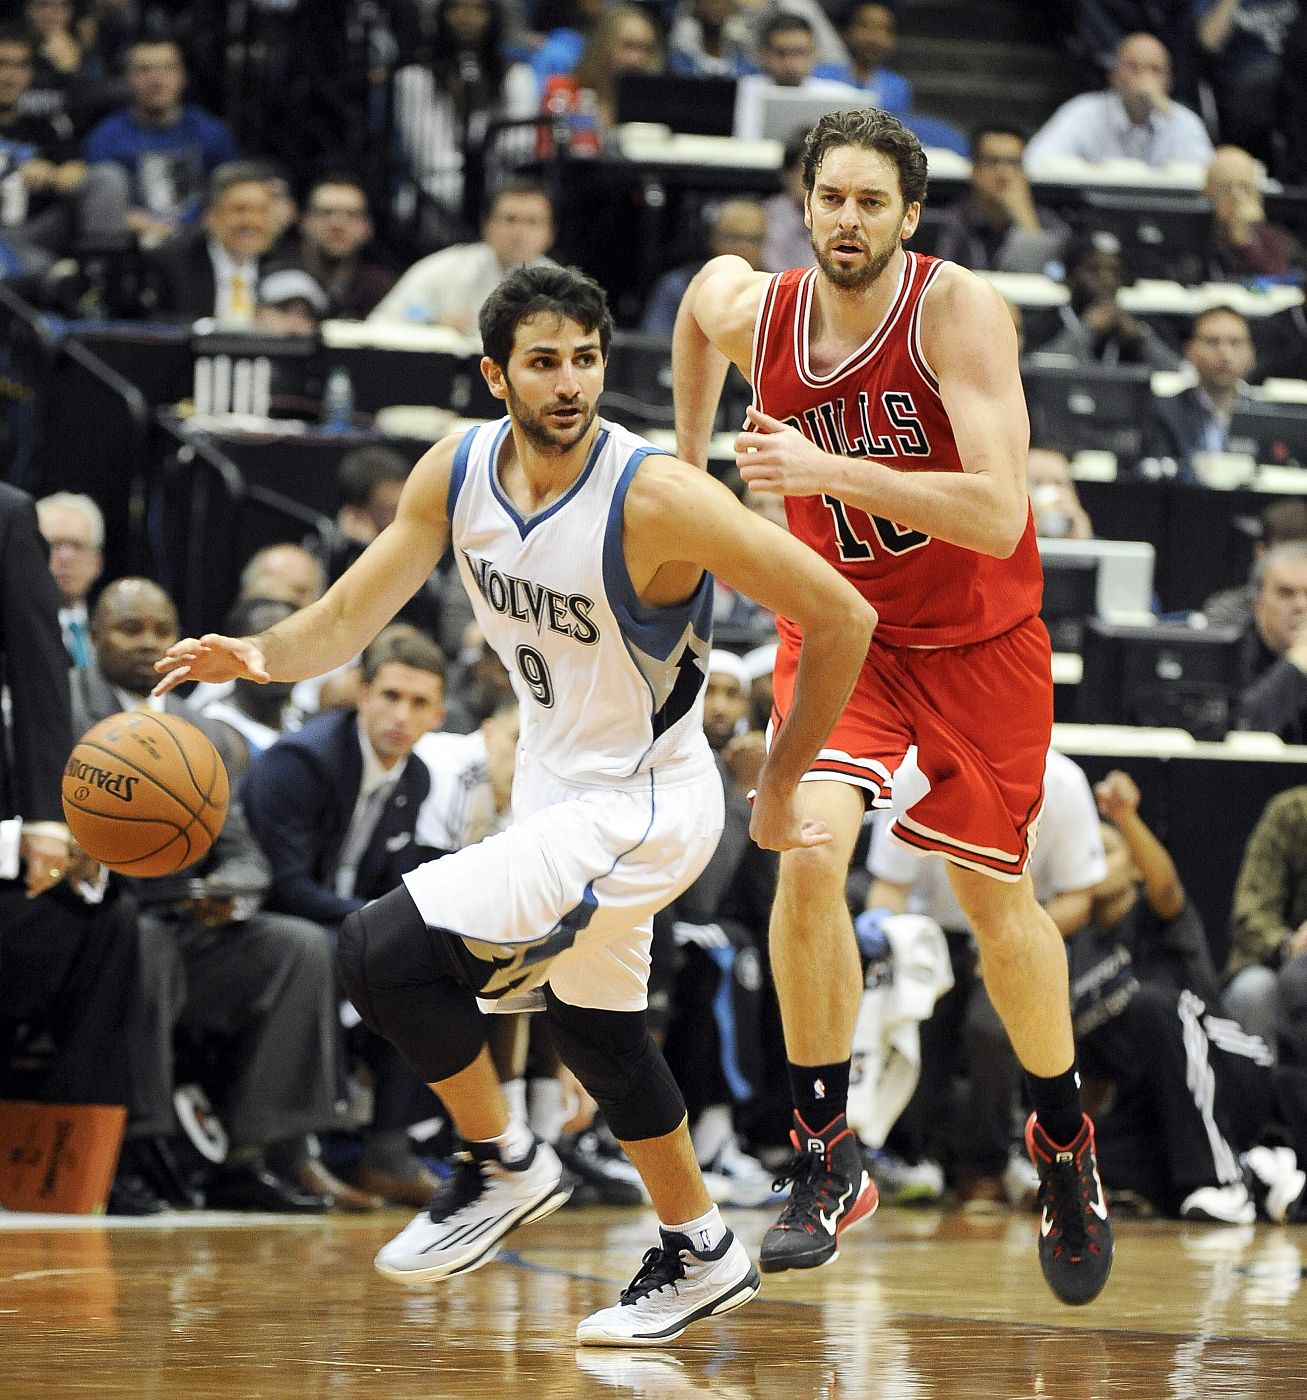 El jugador español Ricky Rubio de los Timberwolves en acción ante Pau Gasol de los Bulls.